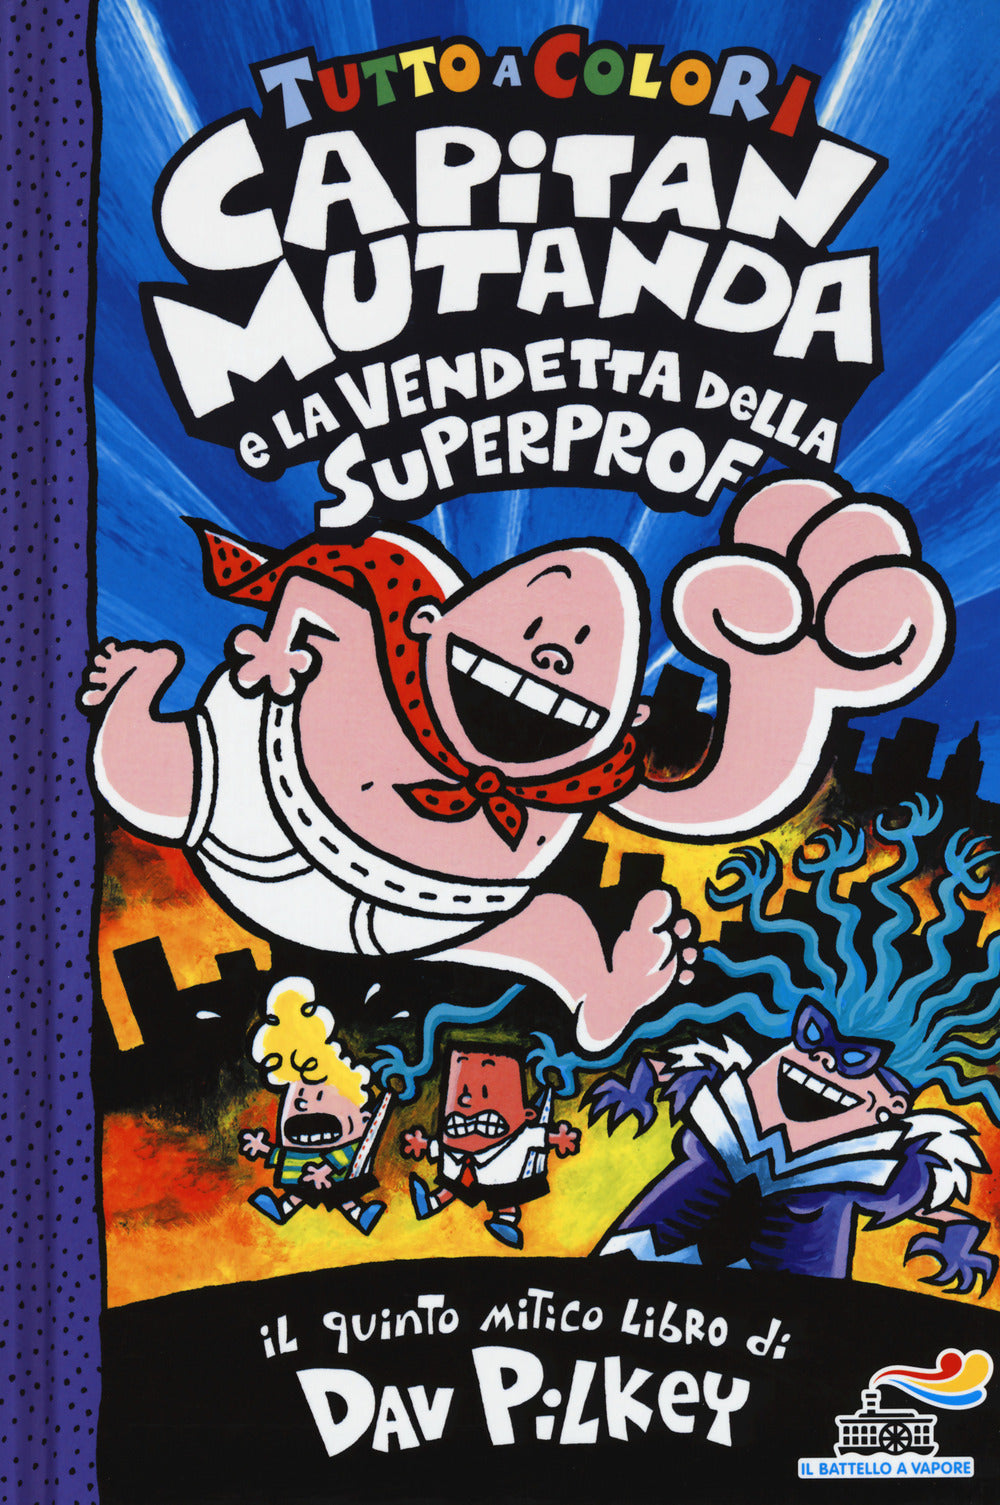 Capitan Mutanda e la vendetta della superprof